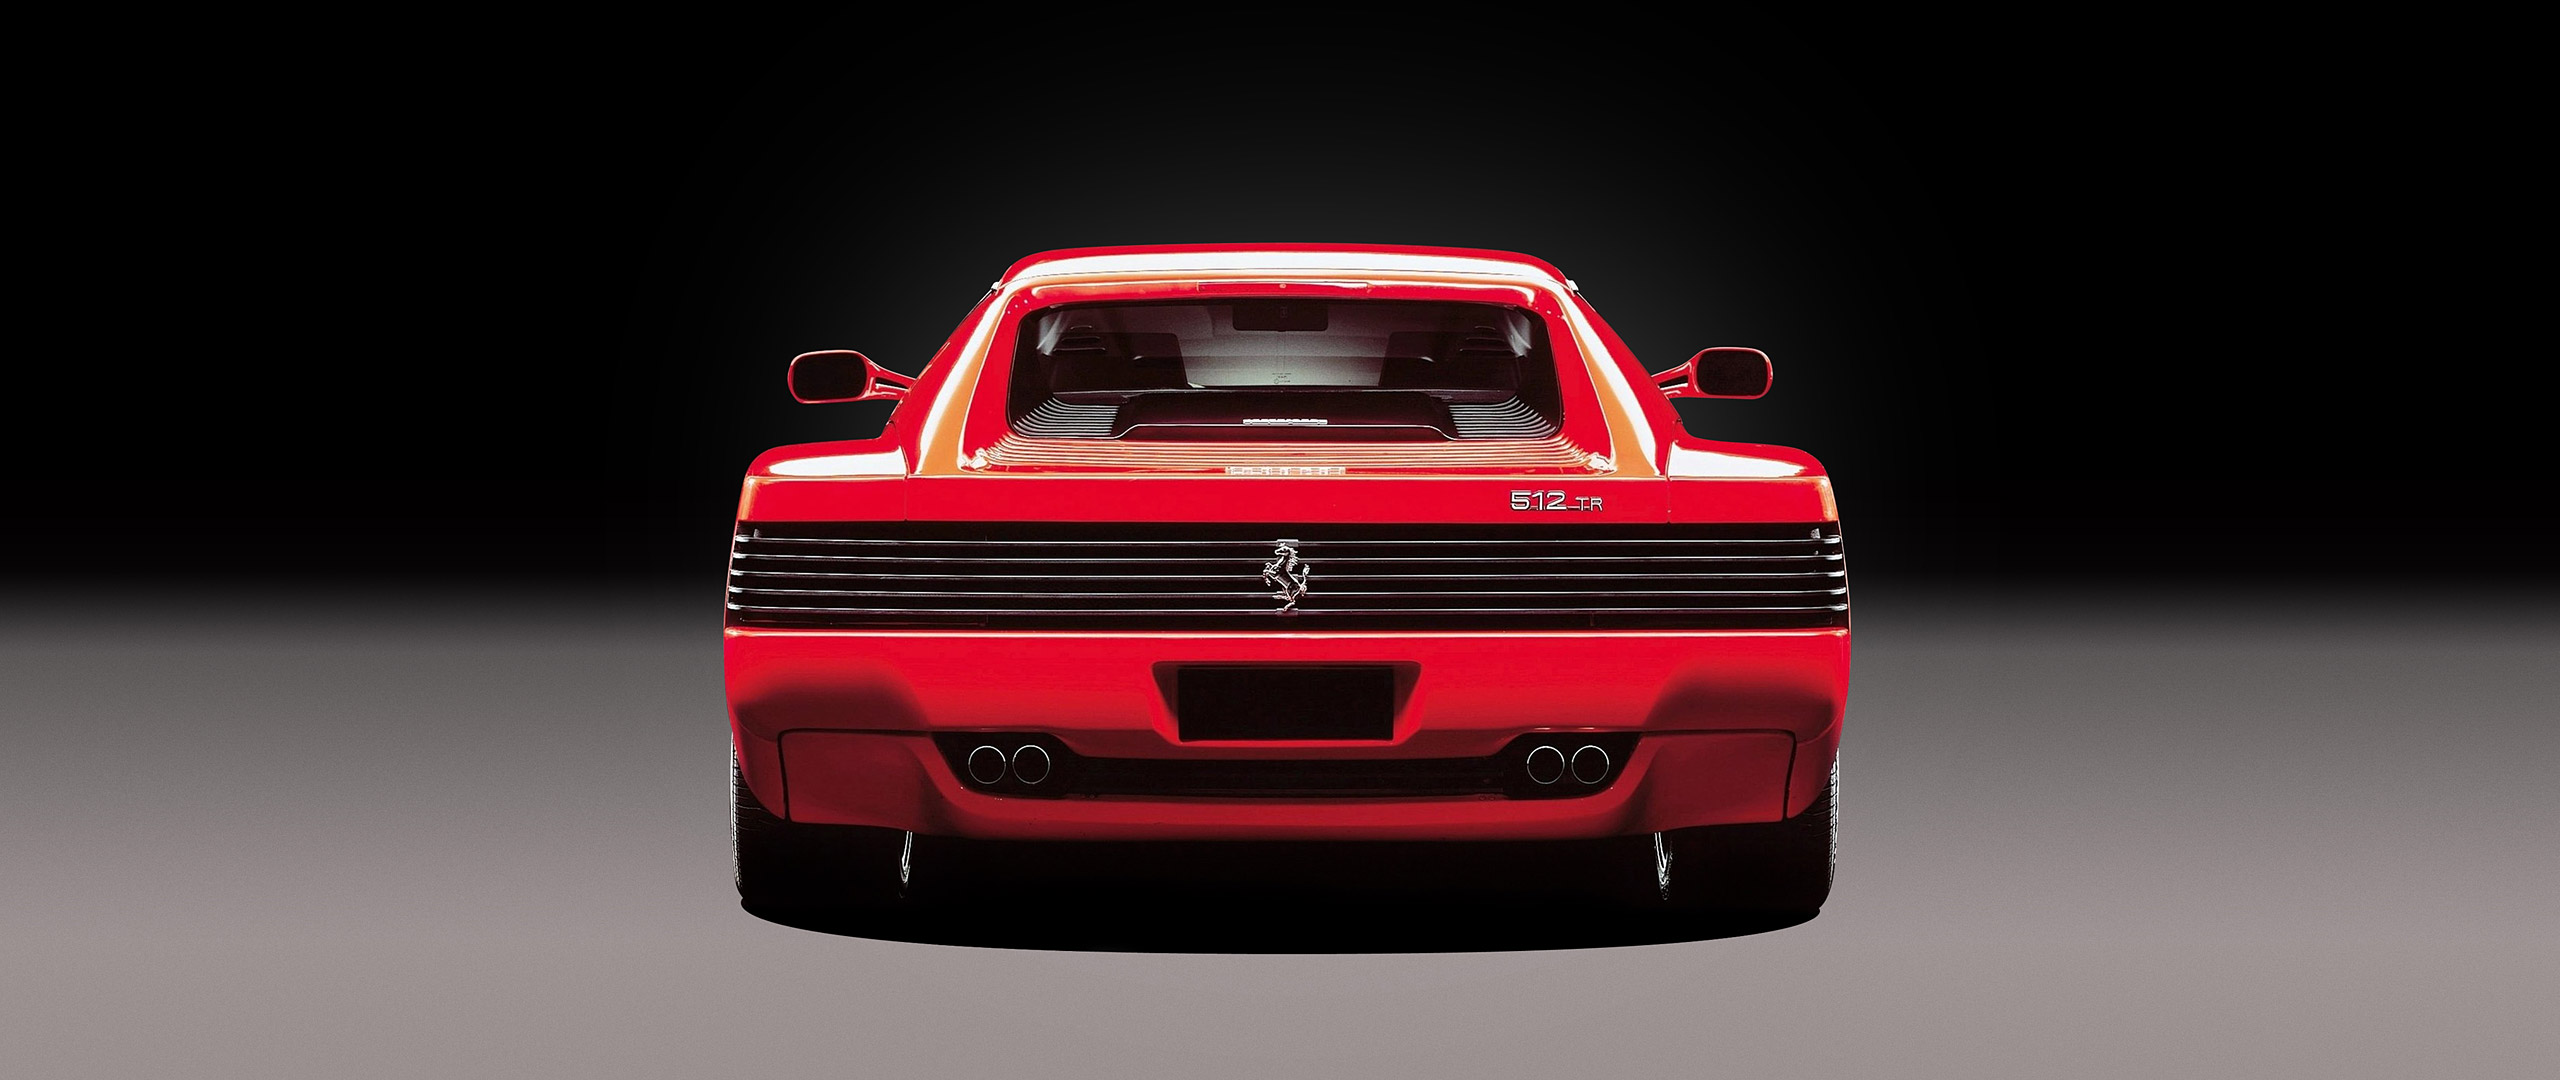  1991 Ferrari 512 TR Wallpaper.